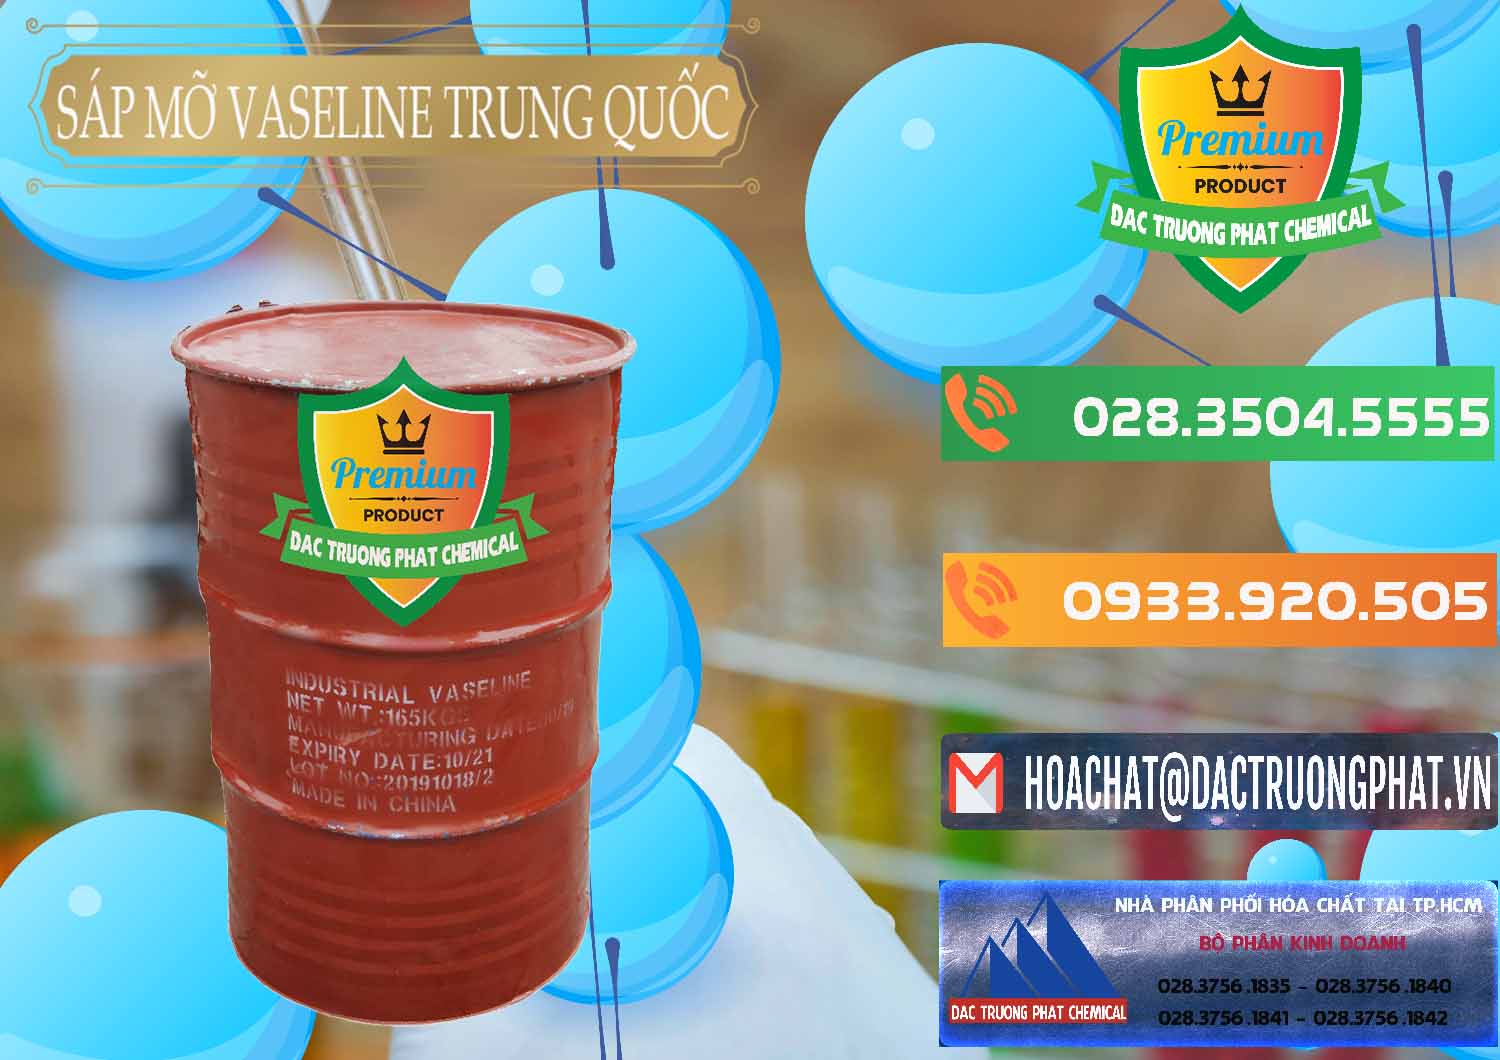 Cty chuyên cung cấp & bán Sáp Mỡ Vaseline Trung Quốc China - 0122 - Nơi cung cấp & kinh doanh hóa chất tại TP.HCM - hoachatxulynuoc.com.vn